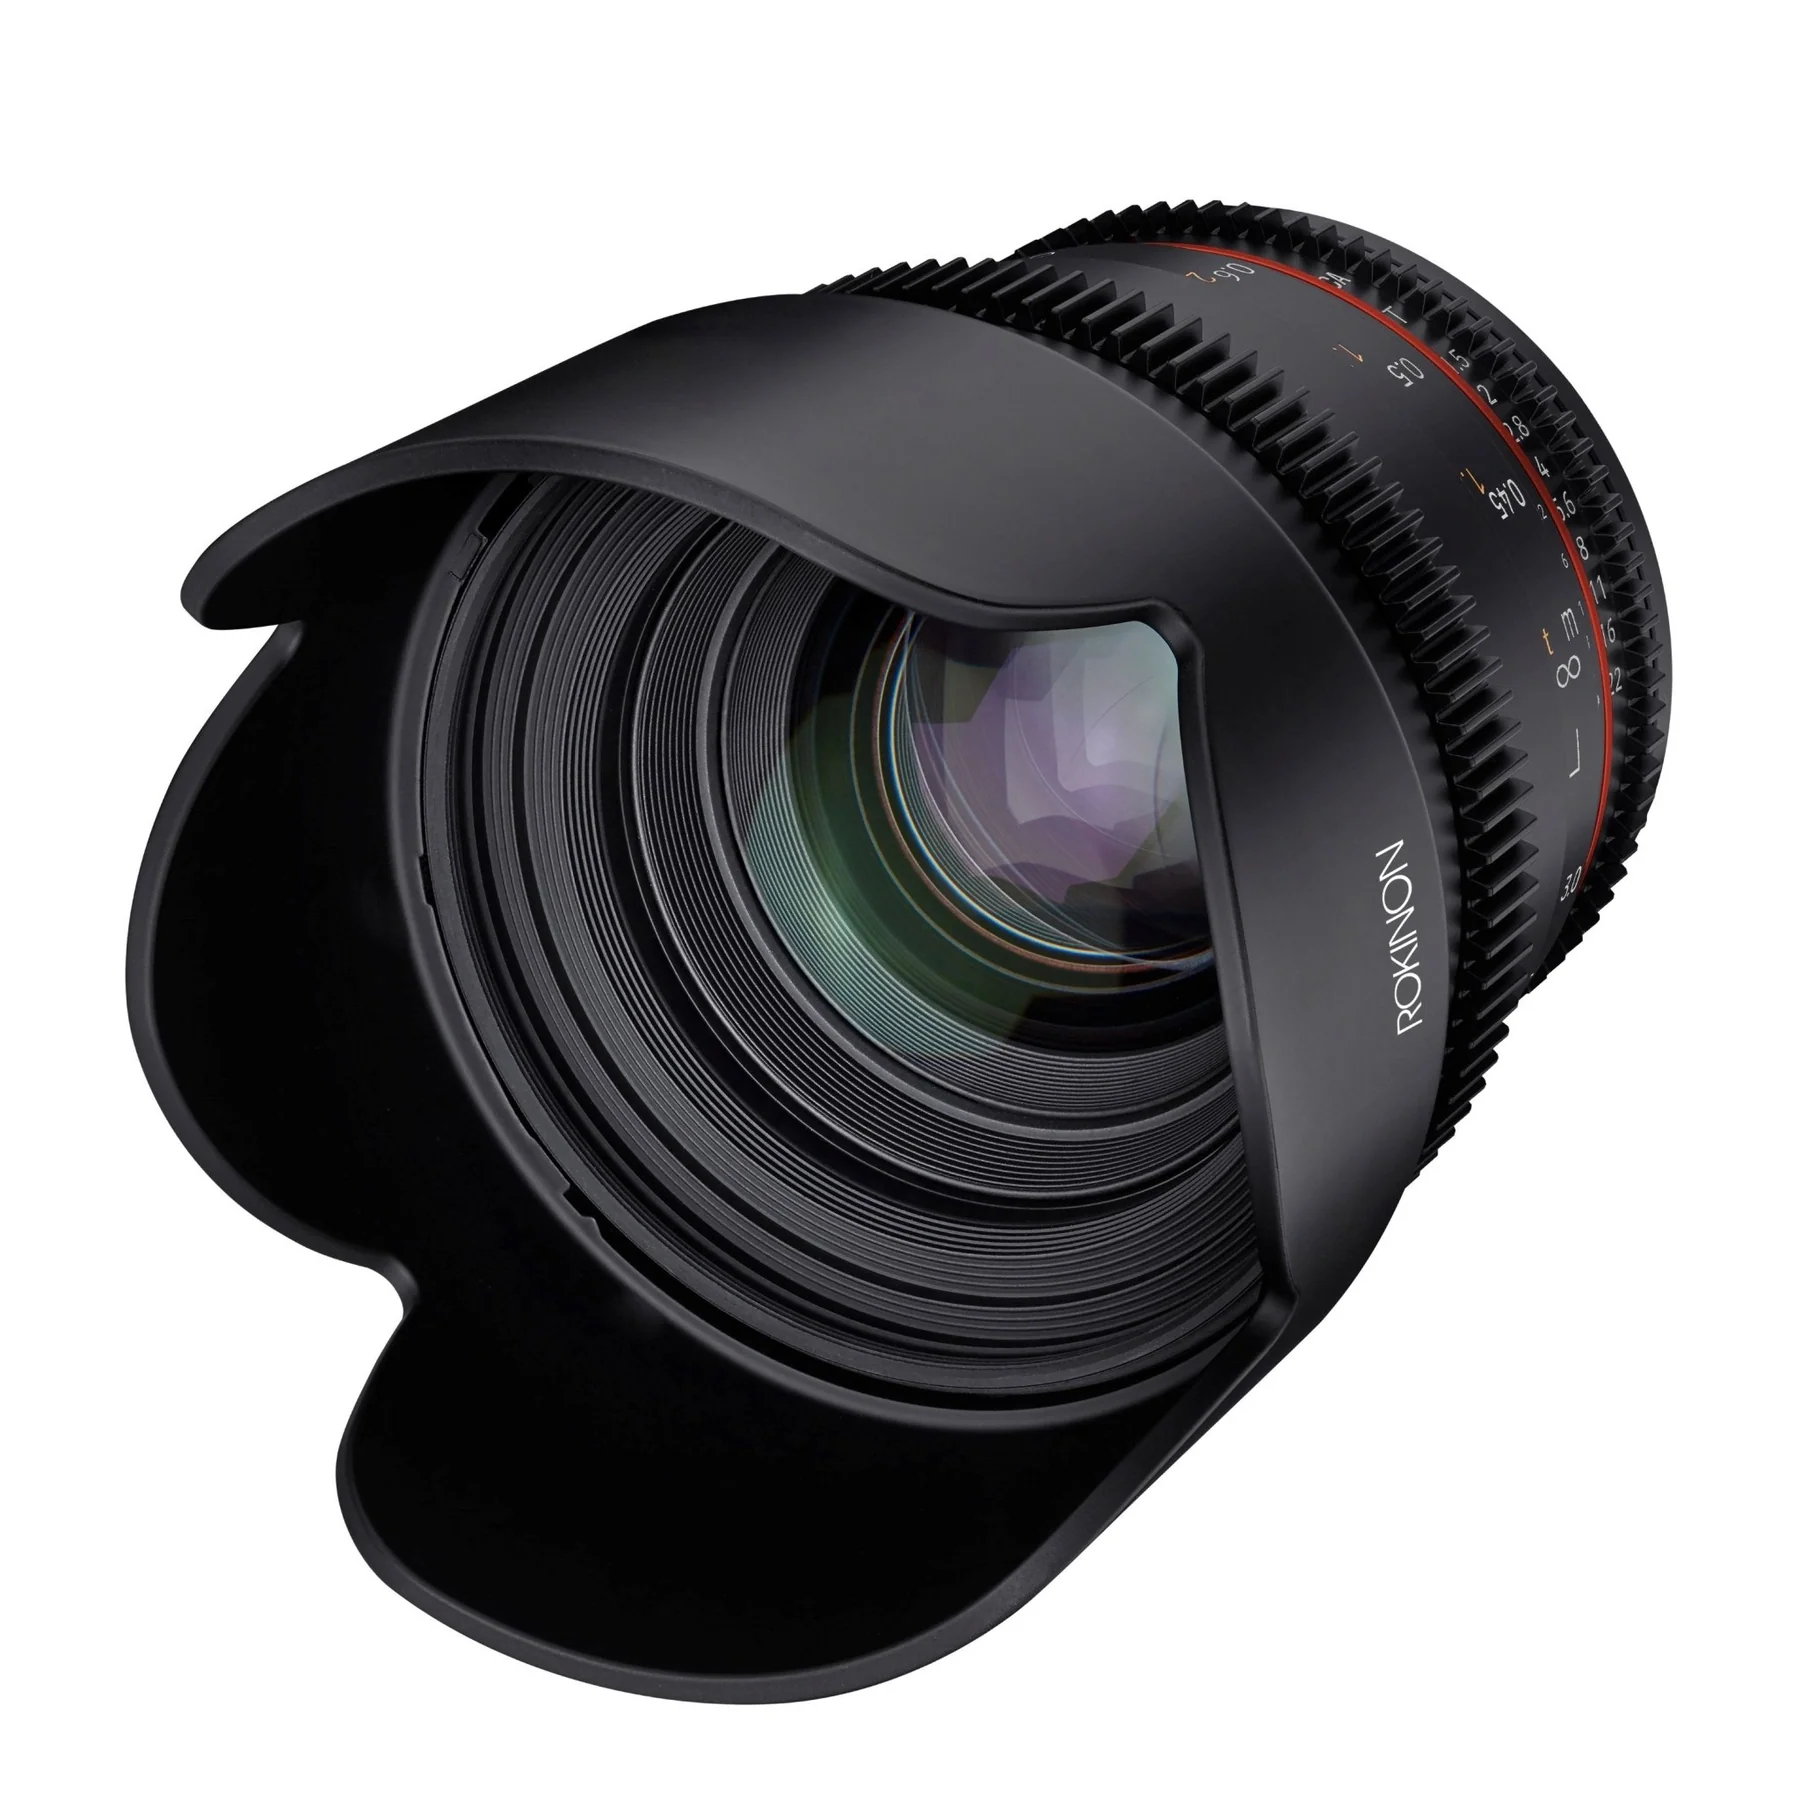 Rokinon 50mm T1.5 Full Frame Cine DSX Lens - Sony E Lens Mount Camera tek